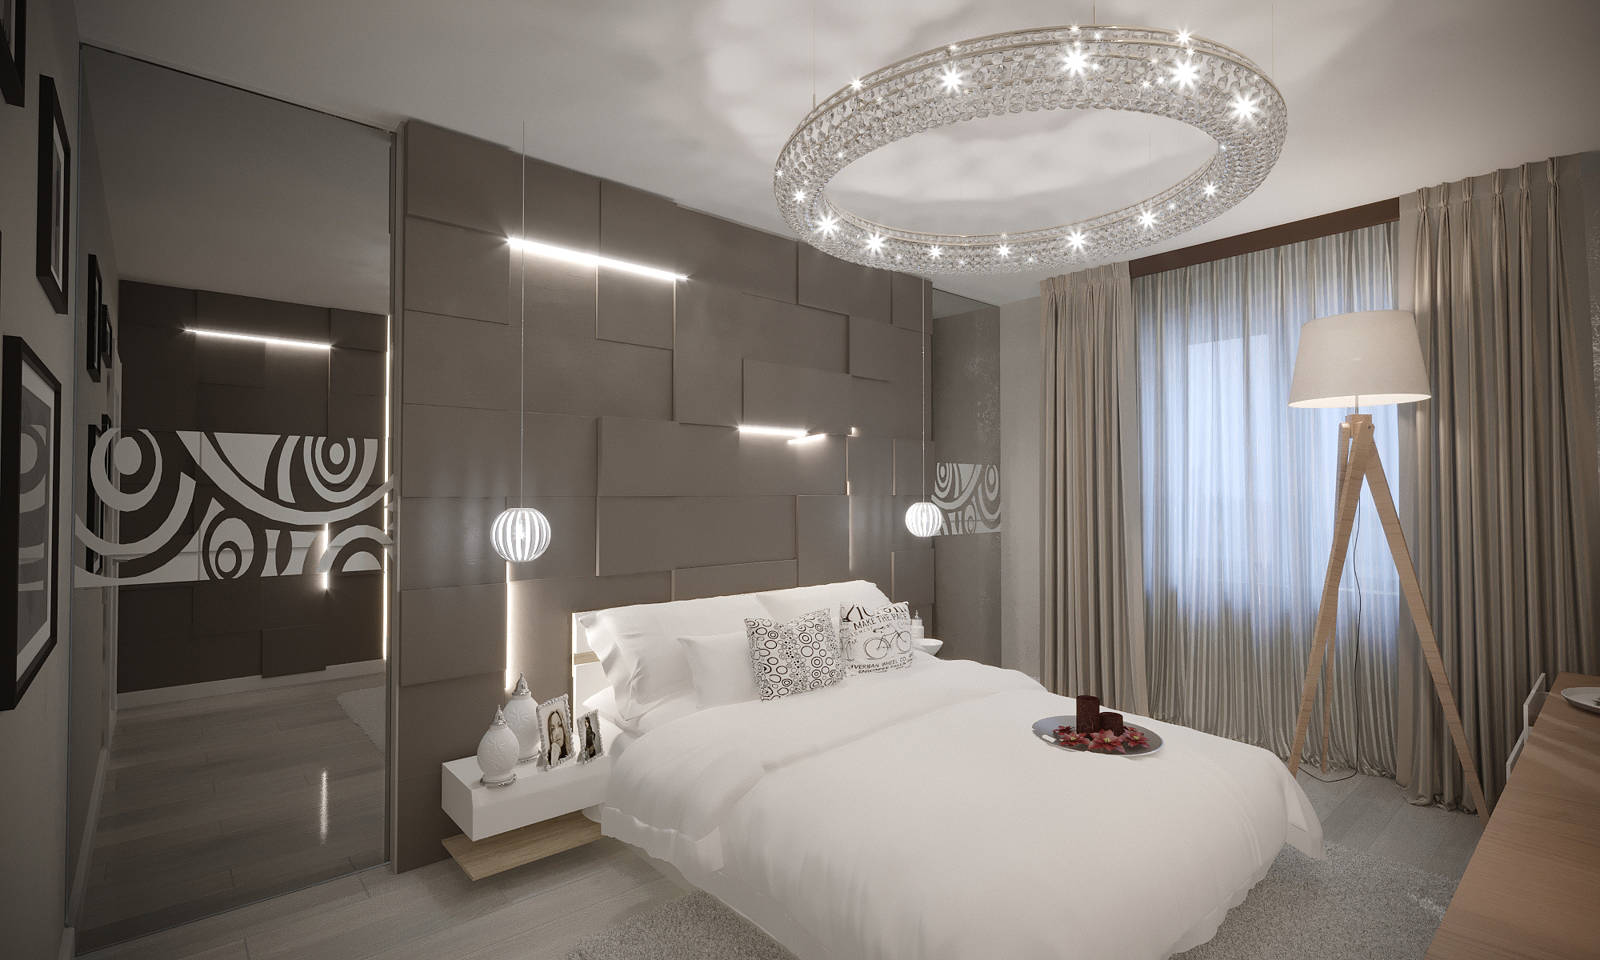 Дизайн спальни киев современній стиль скандинавский идеи новые